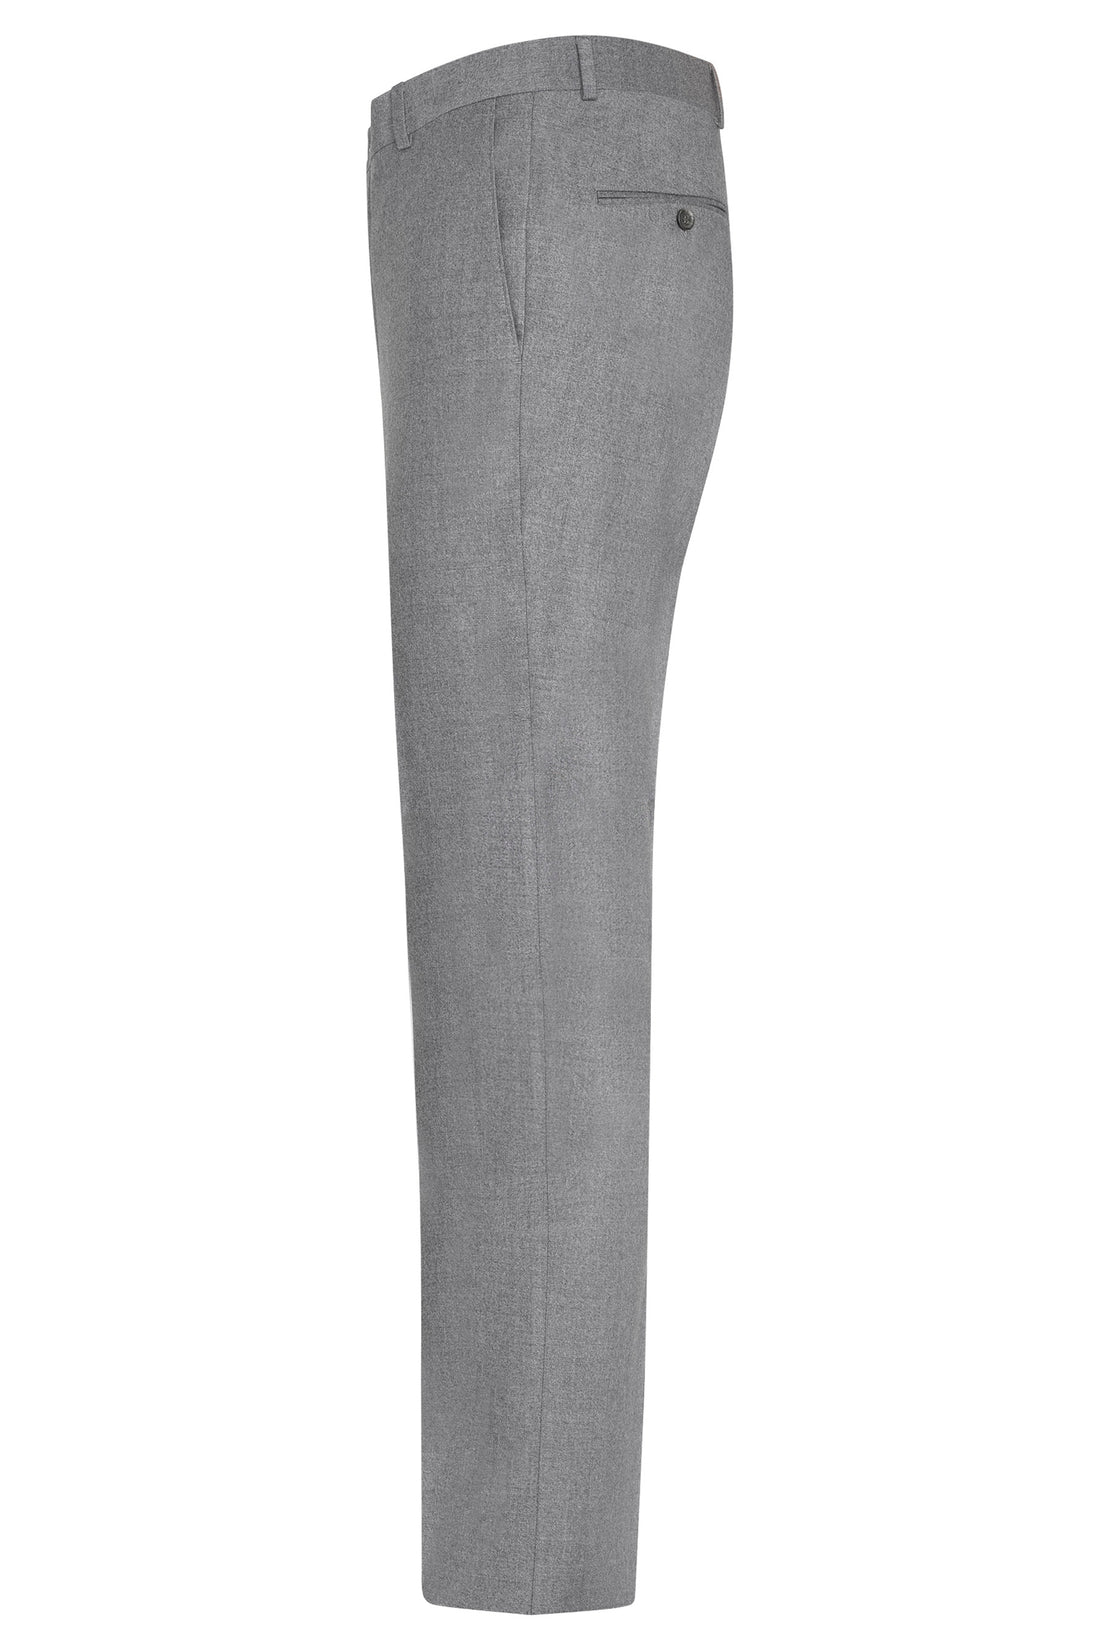 Pantalon gris clair sans plis en flanelle de laine froide